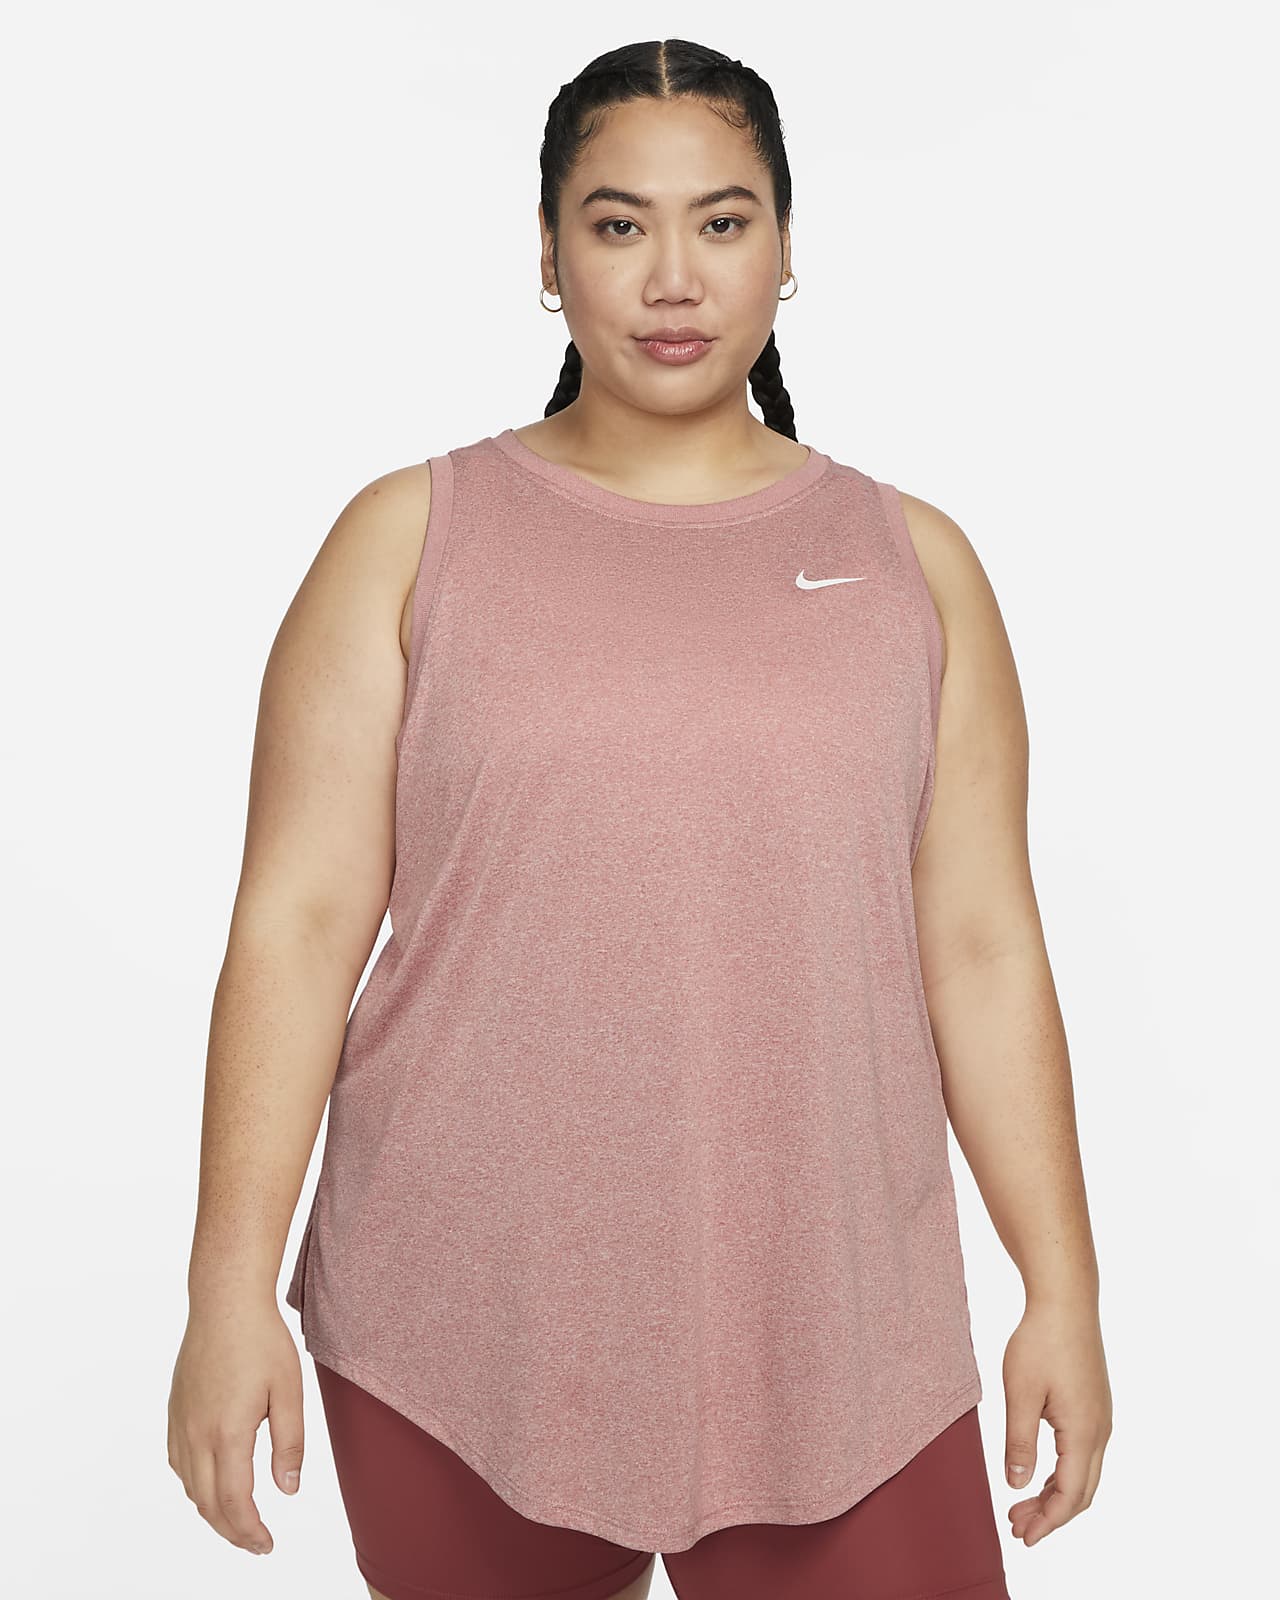 Nike Women's Tank (Plus Nike.com